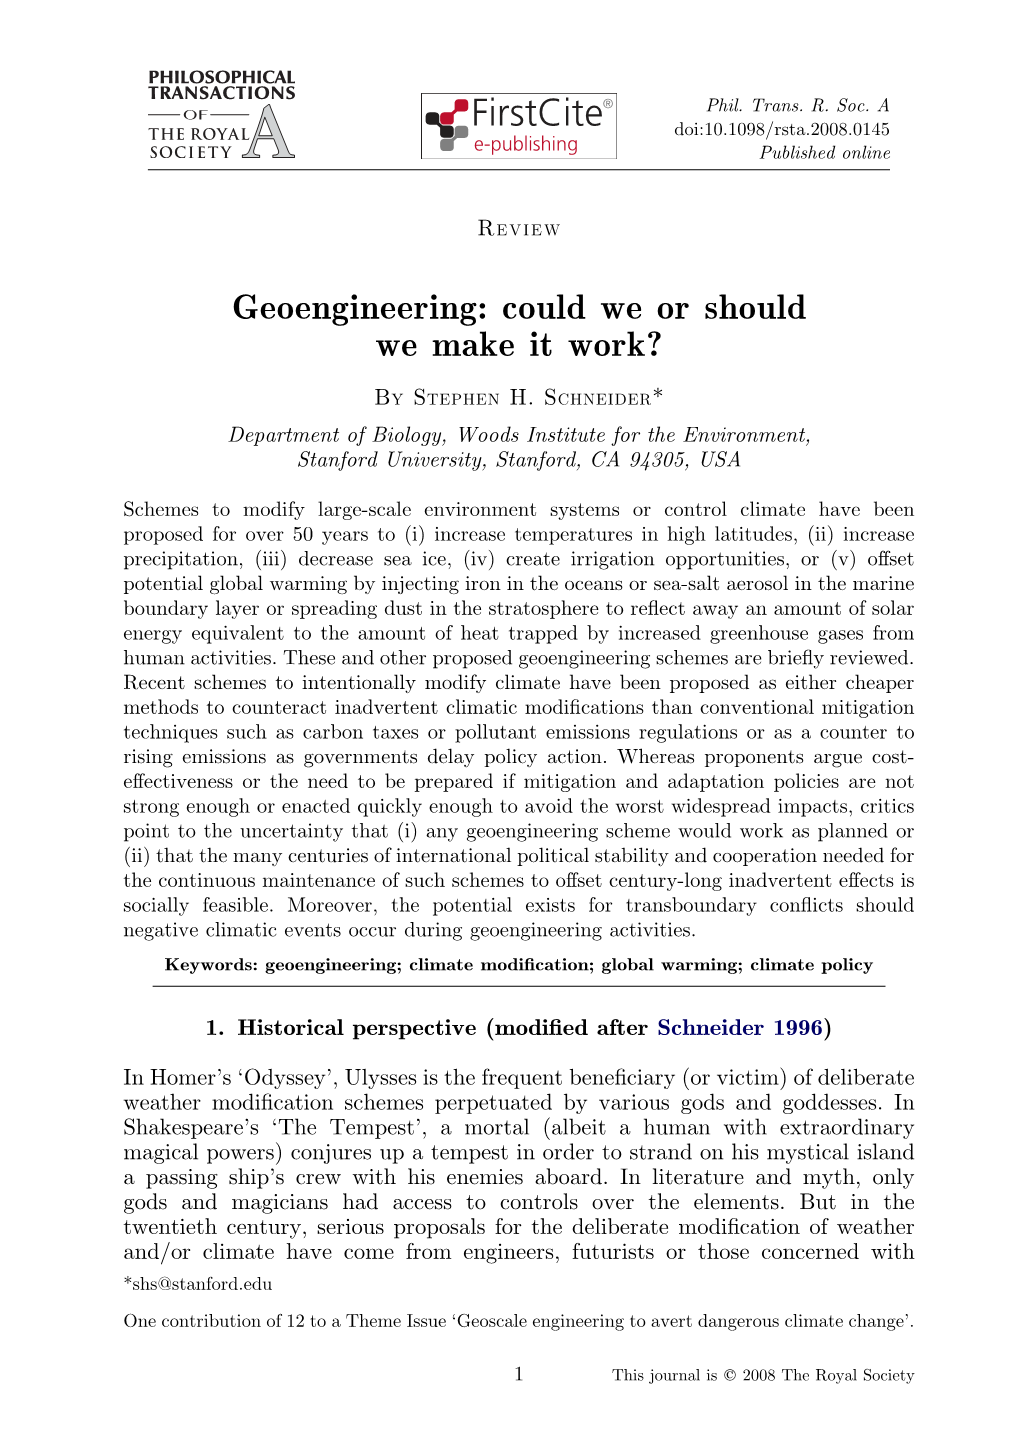 Geoengineering: Could We Or Should We Make It Work?